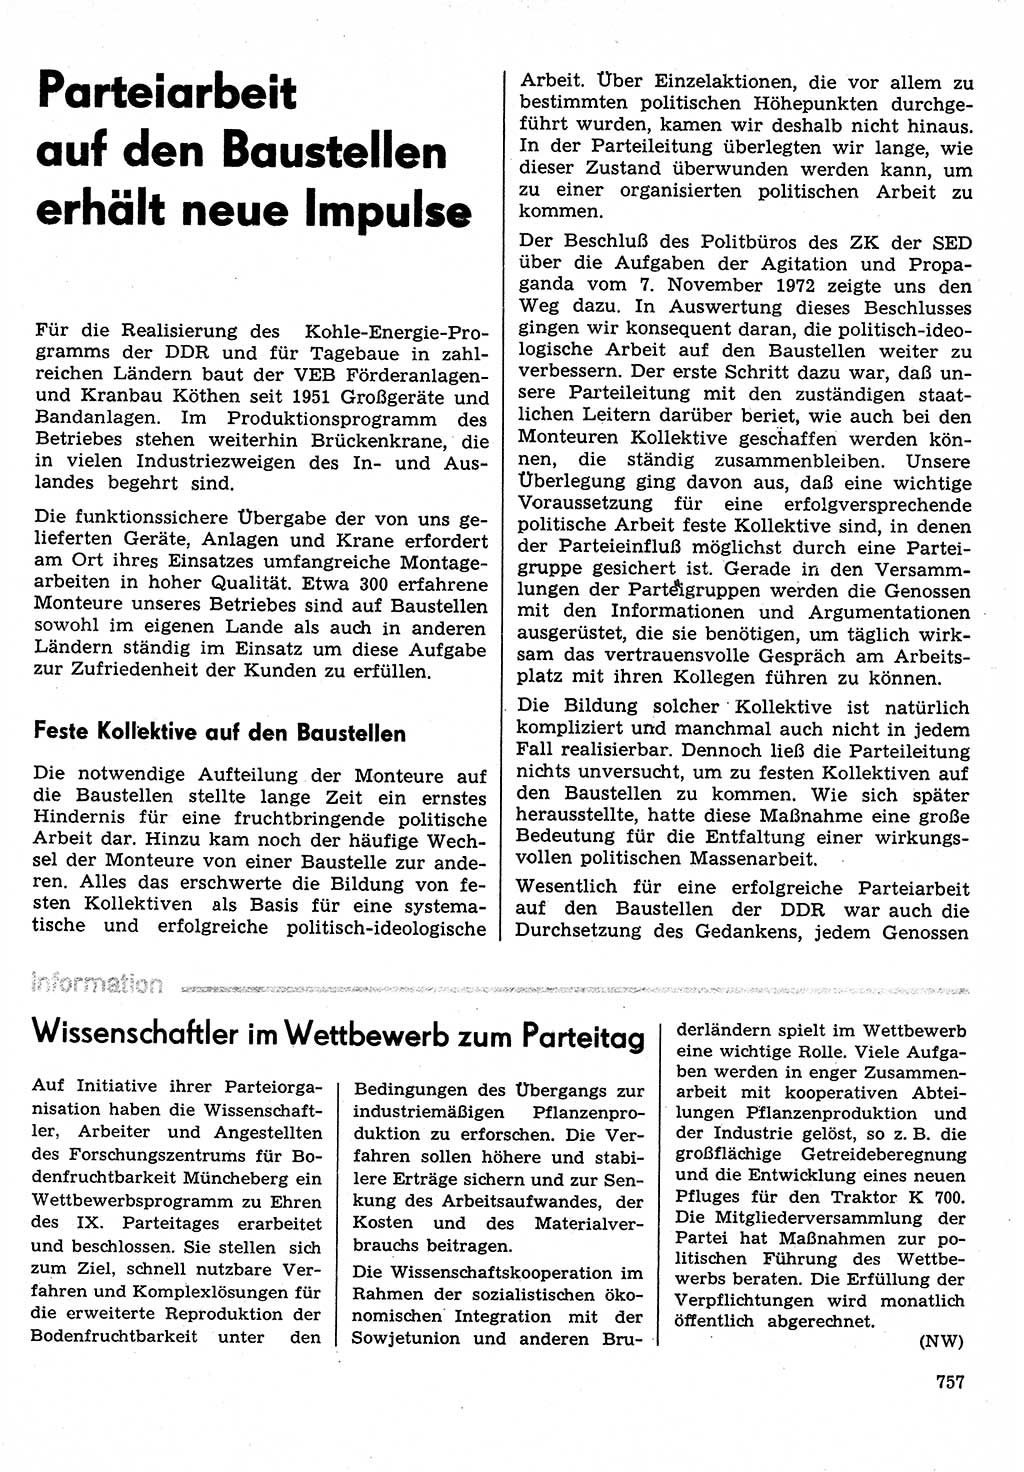 Neuer Weg (NW), Organ des Zentralkomitees (ZK) der SED (Sozialistische Einheitspartei Deutschlands) für Fragen des Parteilebens, 30. Jahrgang [Deutsche Demokratische Republik (DDR)] 1975, Seite 757 (NW ZK SED DDR 1975, S. 757)